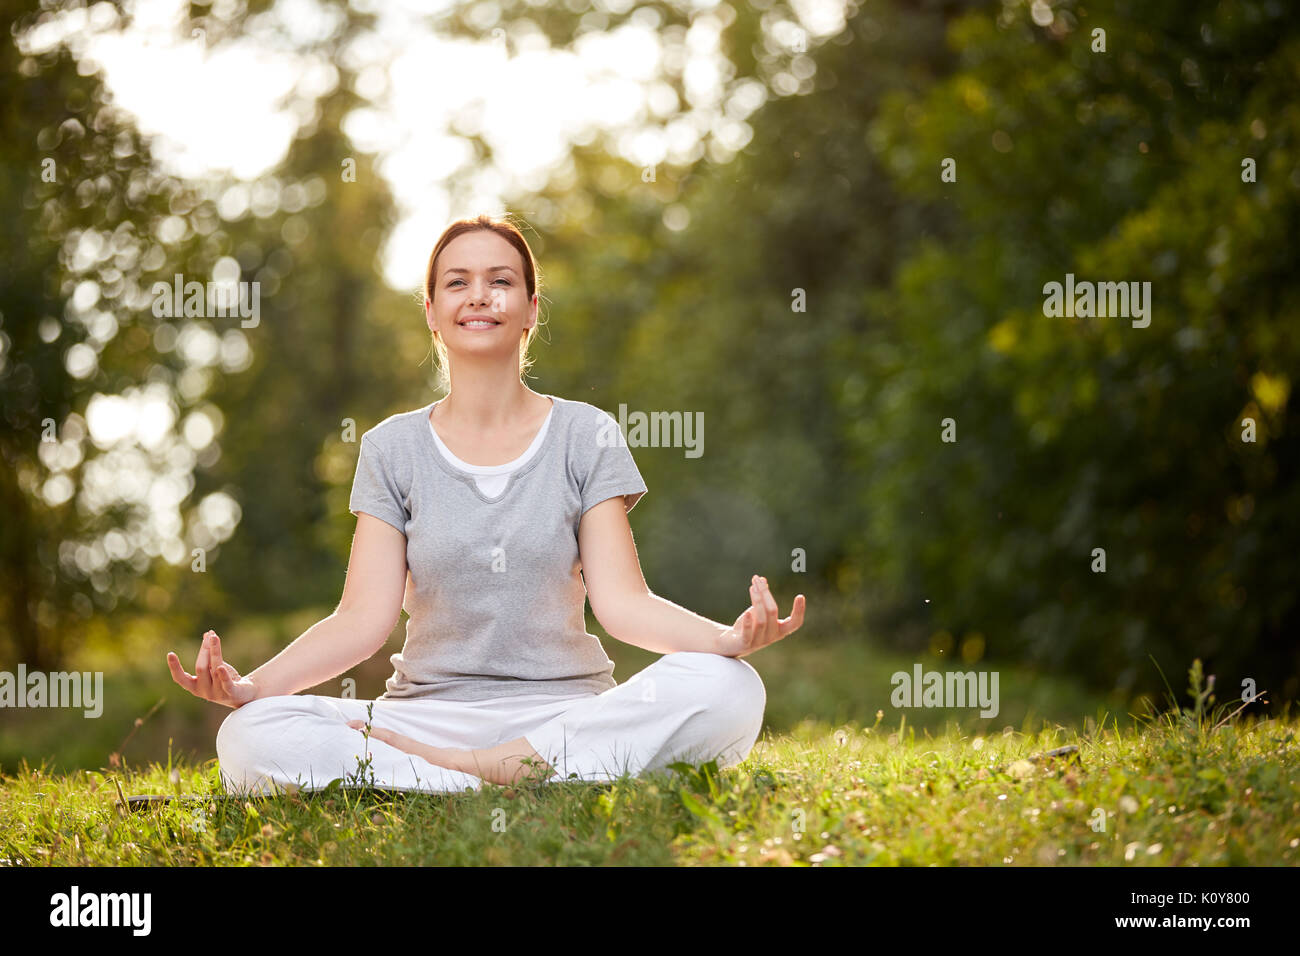 Weibliche Person im Yoga pose im sonnigen Natur Stockfoto